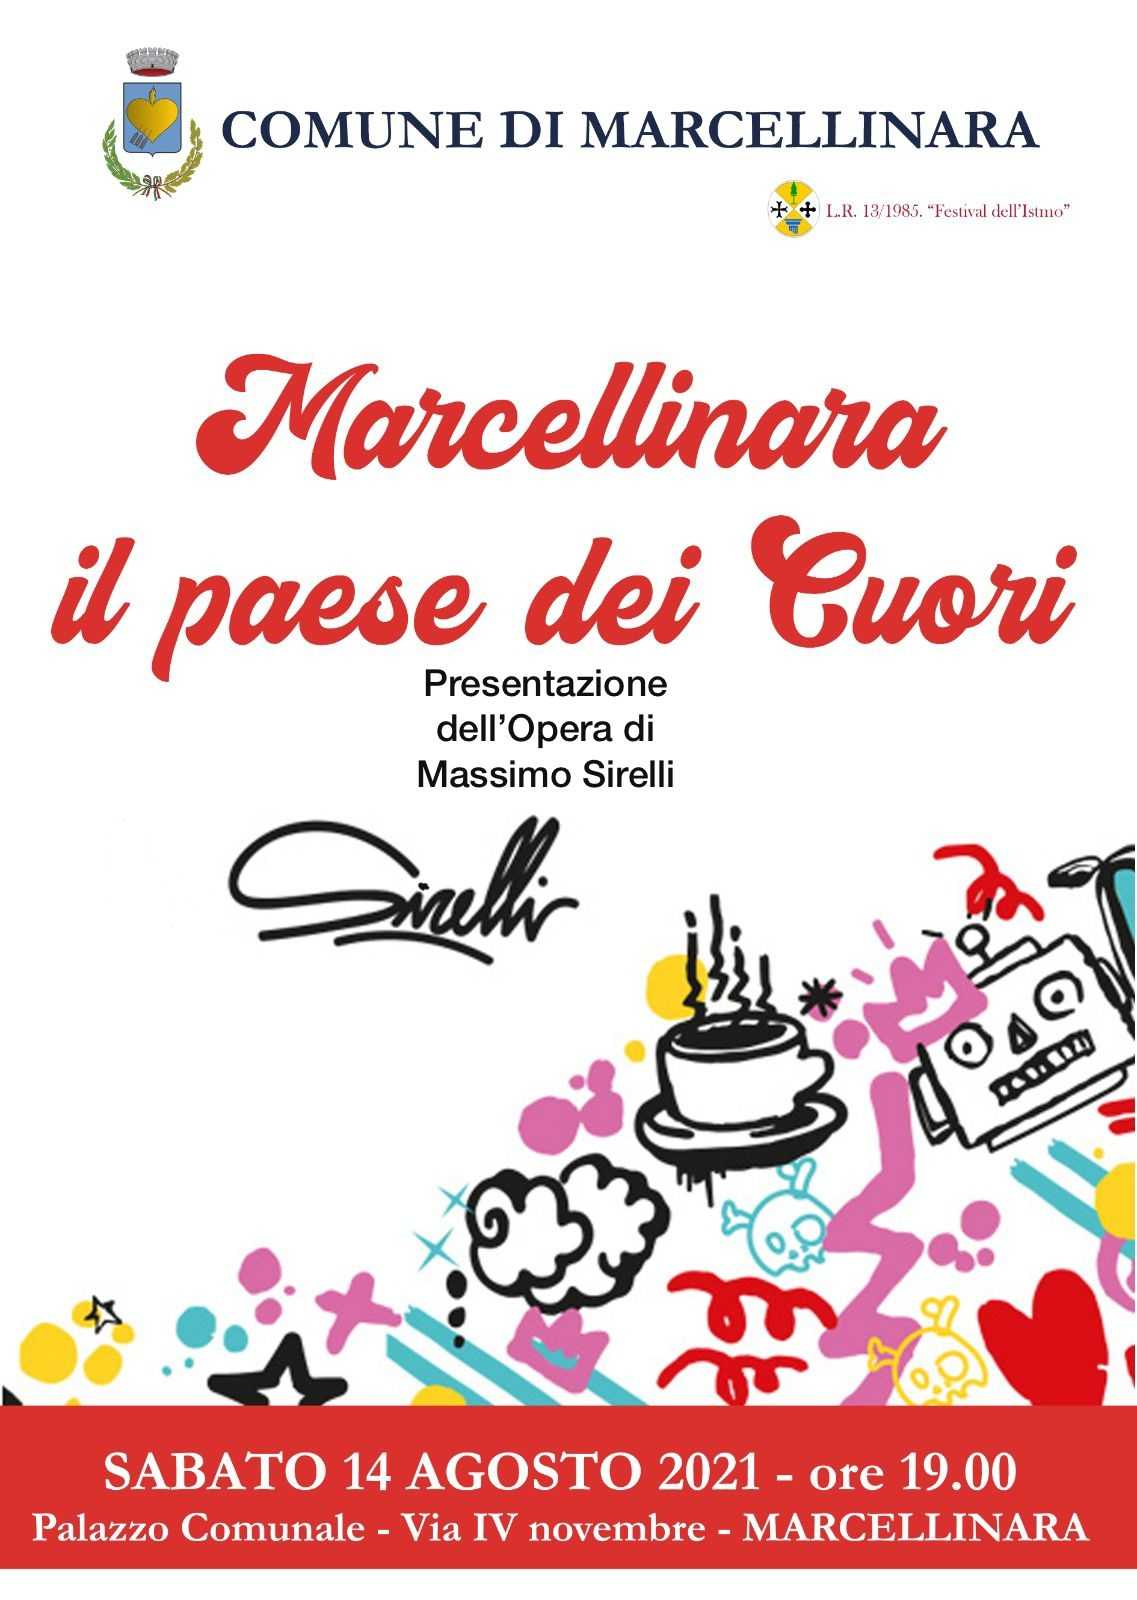 Marcellinara, il paese dei Cuori: Presentazione dell’opera di Massimo Sirelli